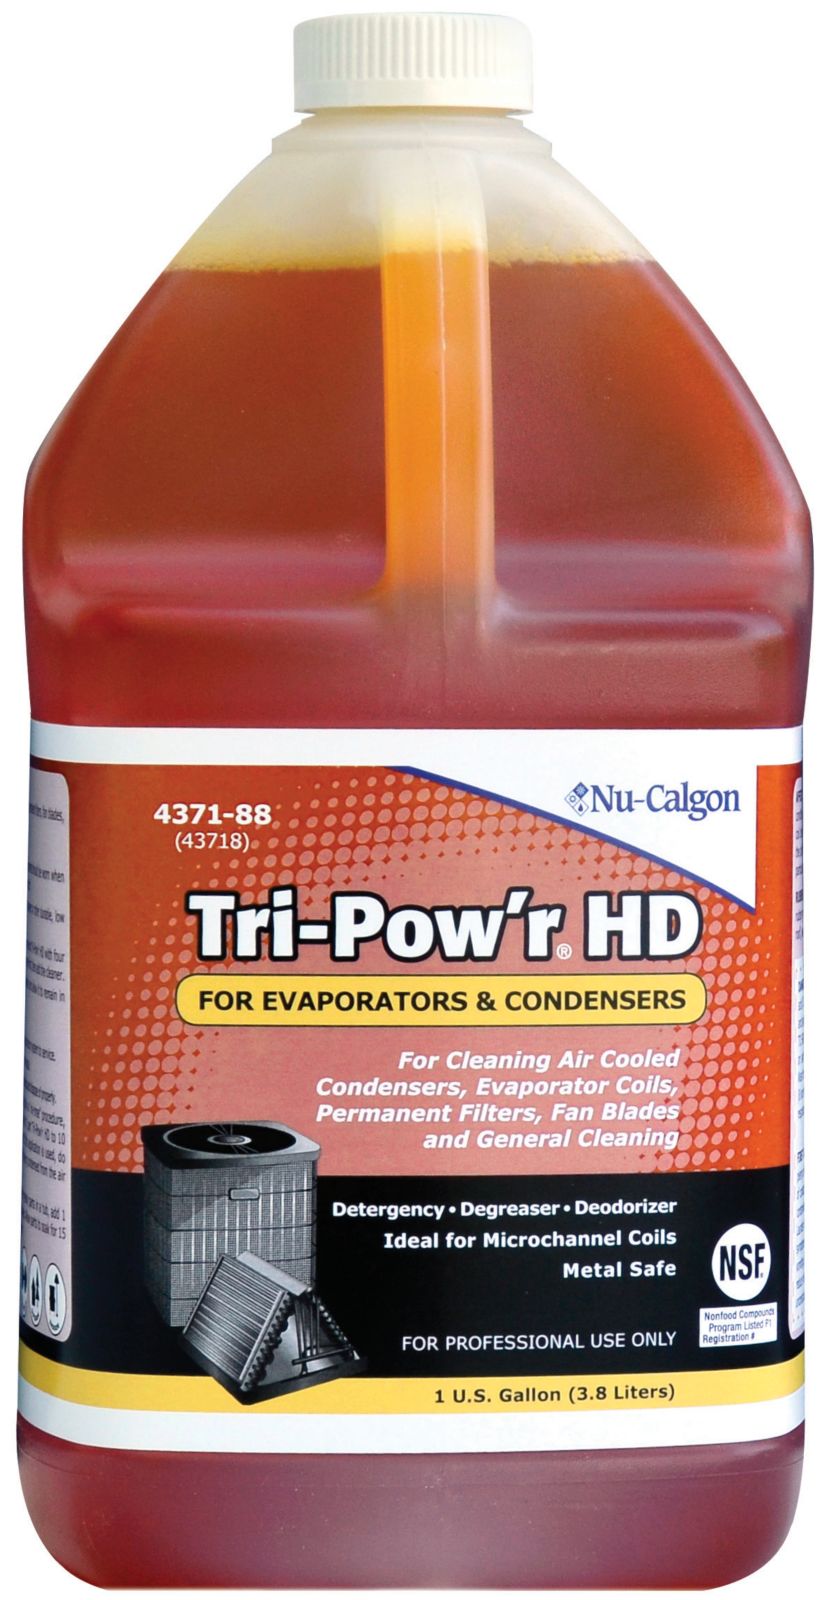 TRI-POW'R HD COIL CLEANER 1 GAL